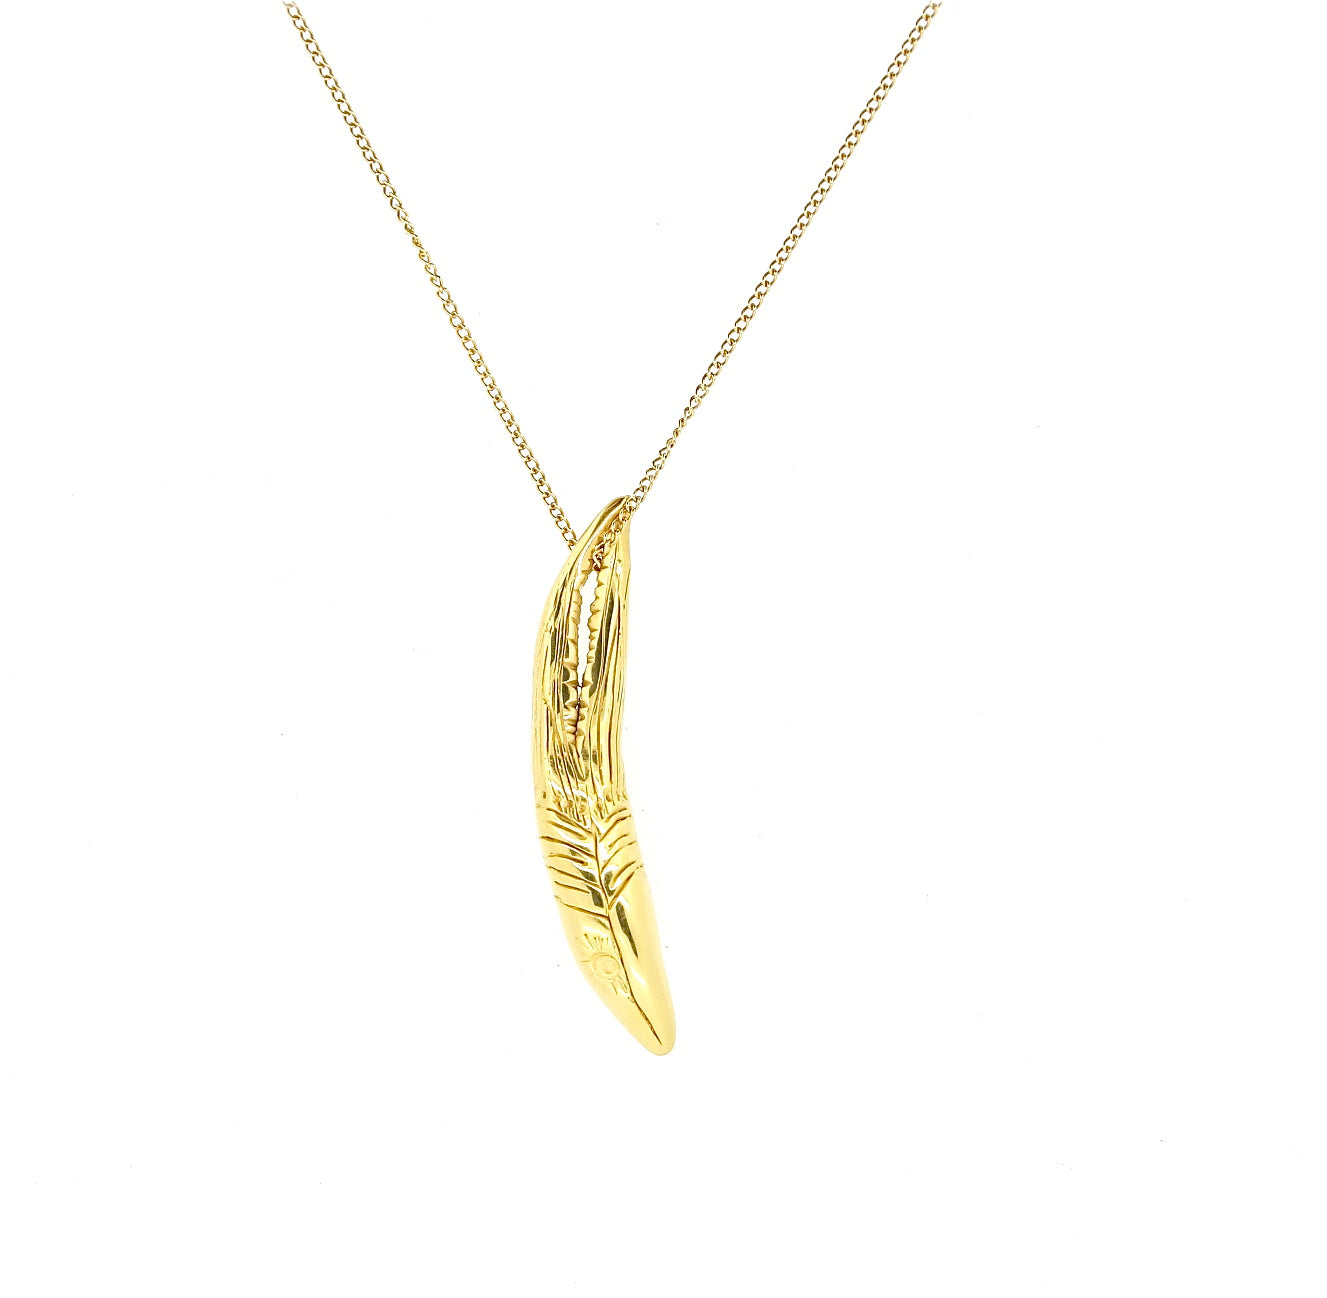 Knobbed hornbill pendant gold